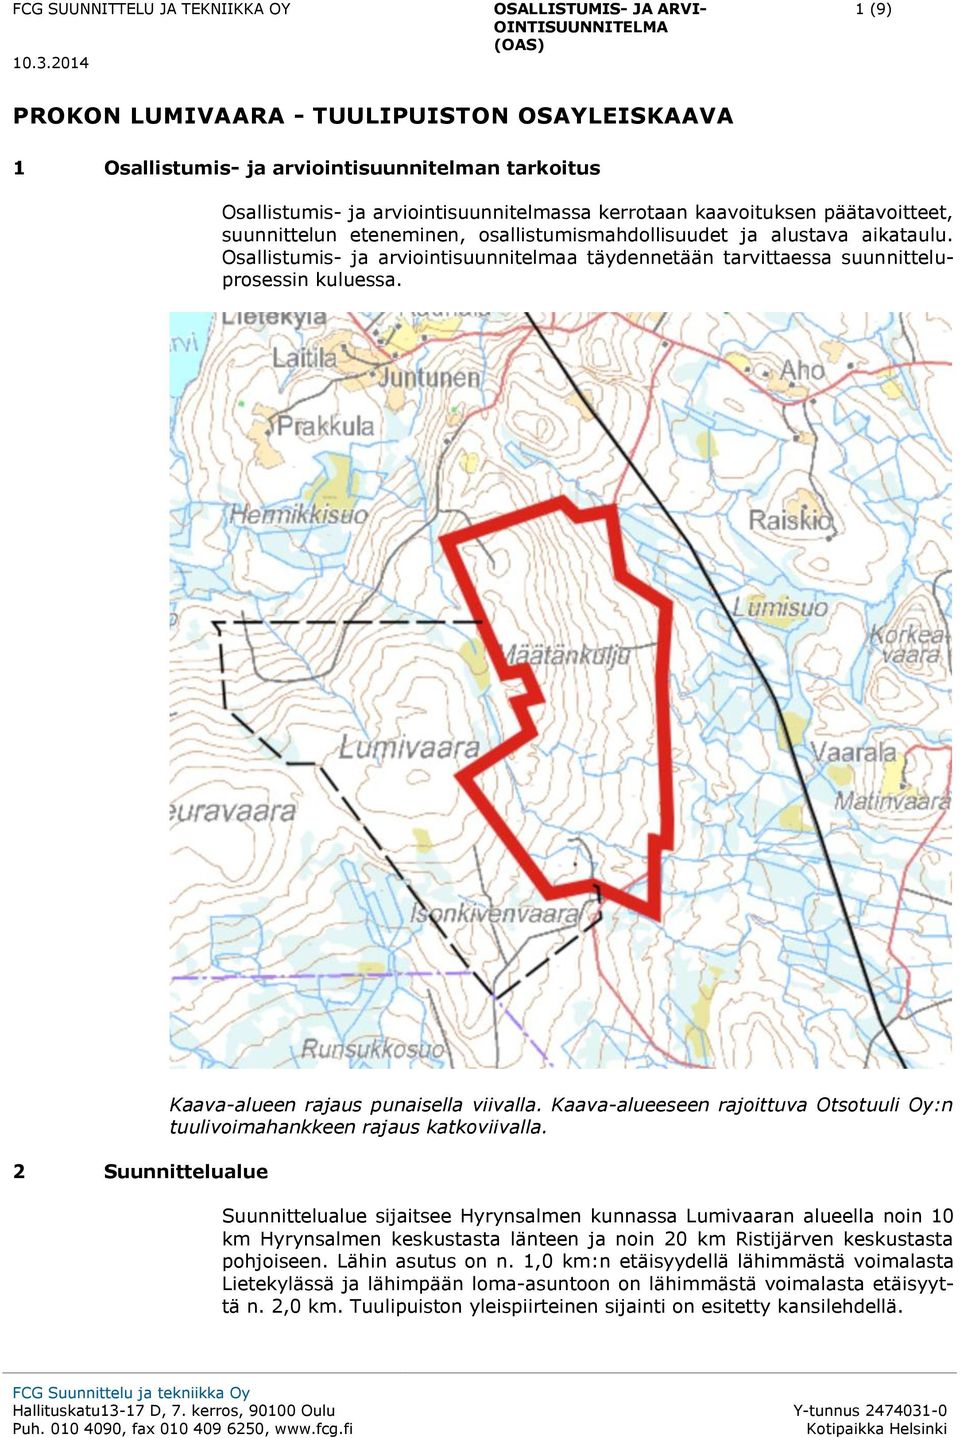 2 Suunnittelualue Kaava-alueen rajaus punaisella viivalla. Kaava-alueeseen rajoittuva Otsotuuli Oy:n tuulivoimahankkeen rajaus katkoviivalla.